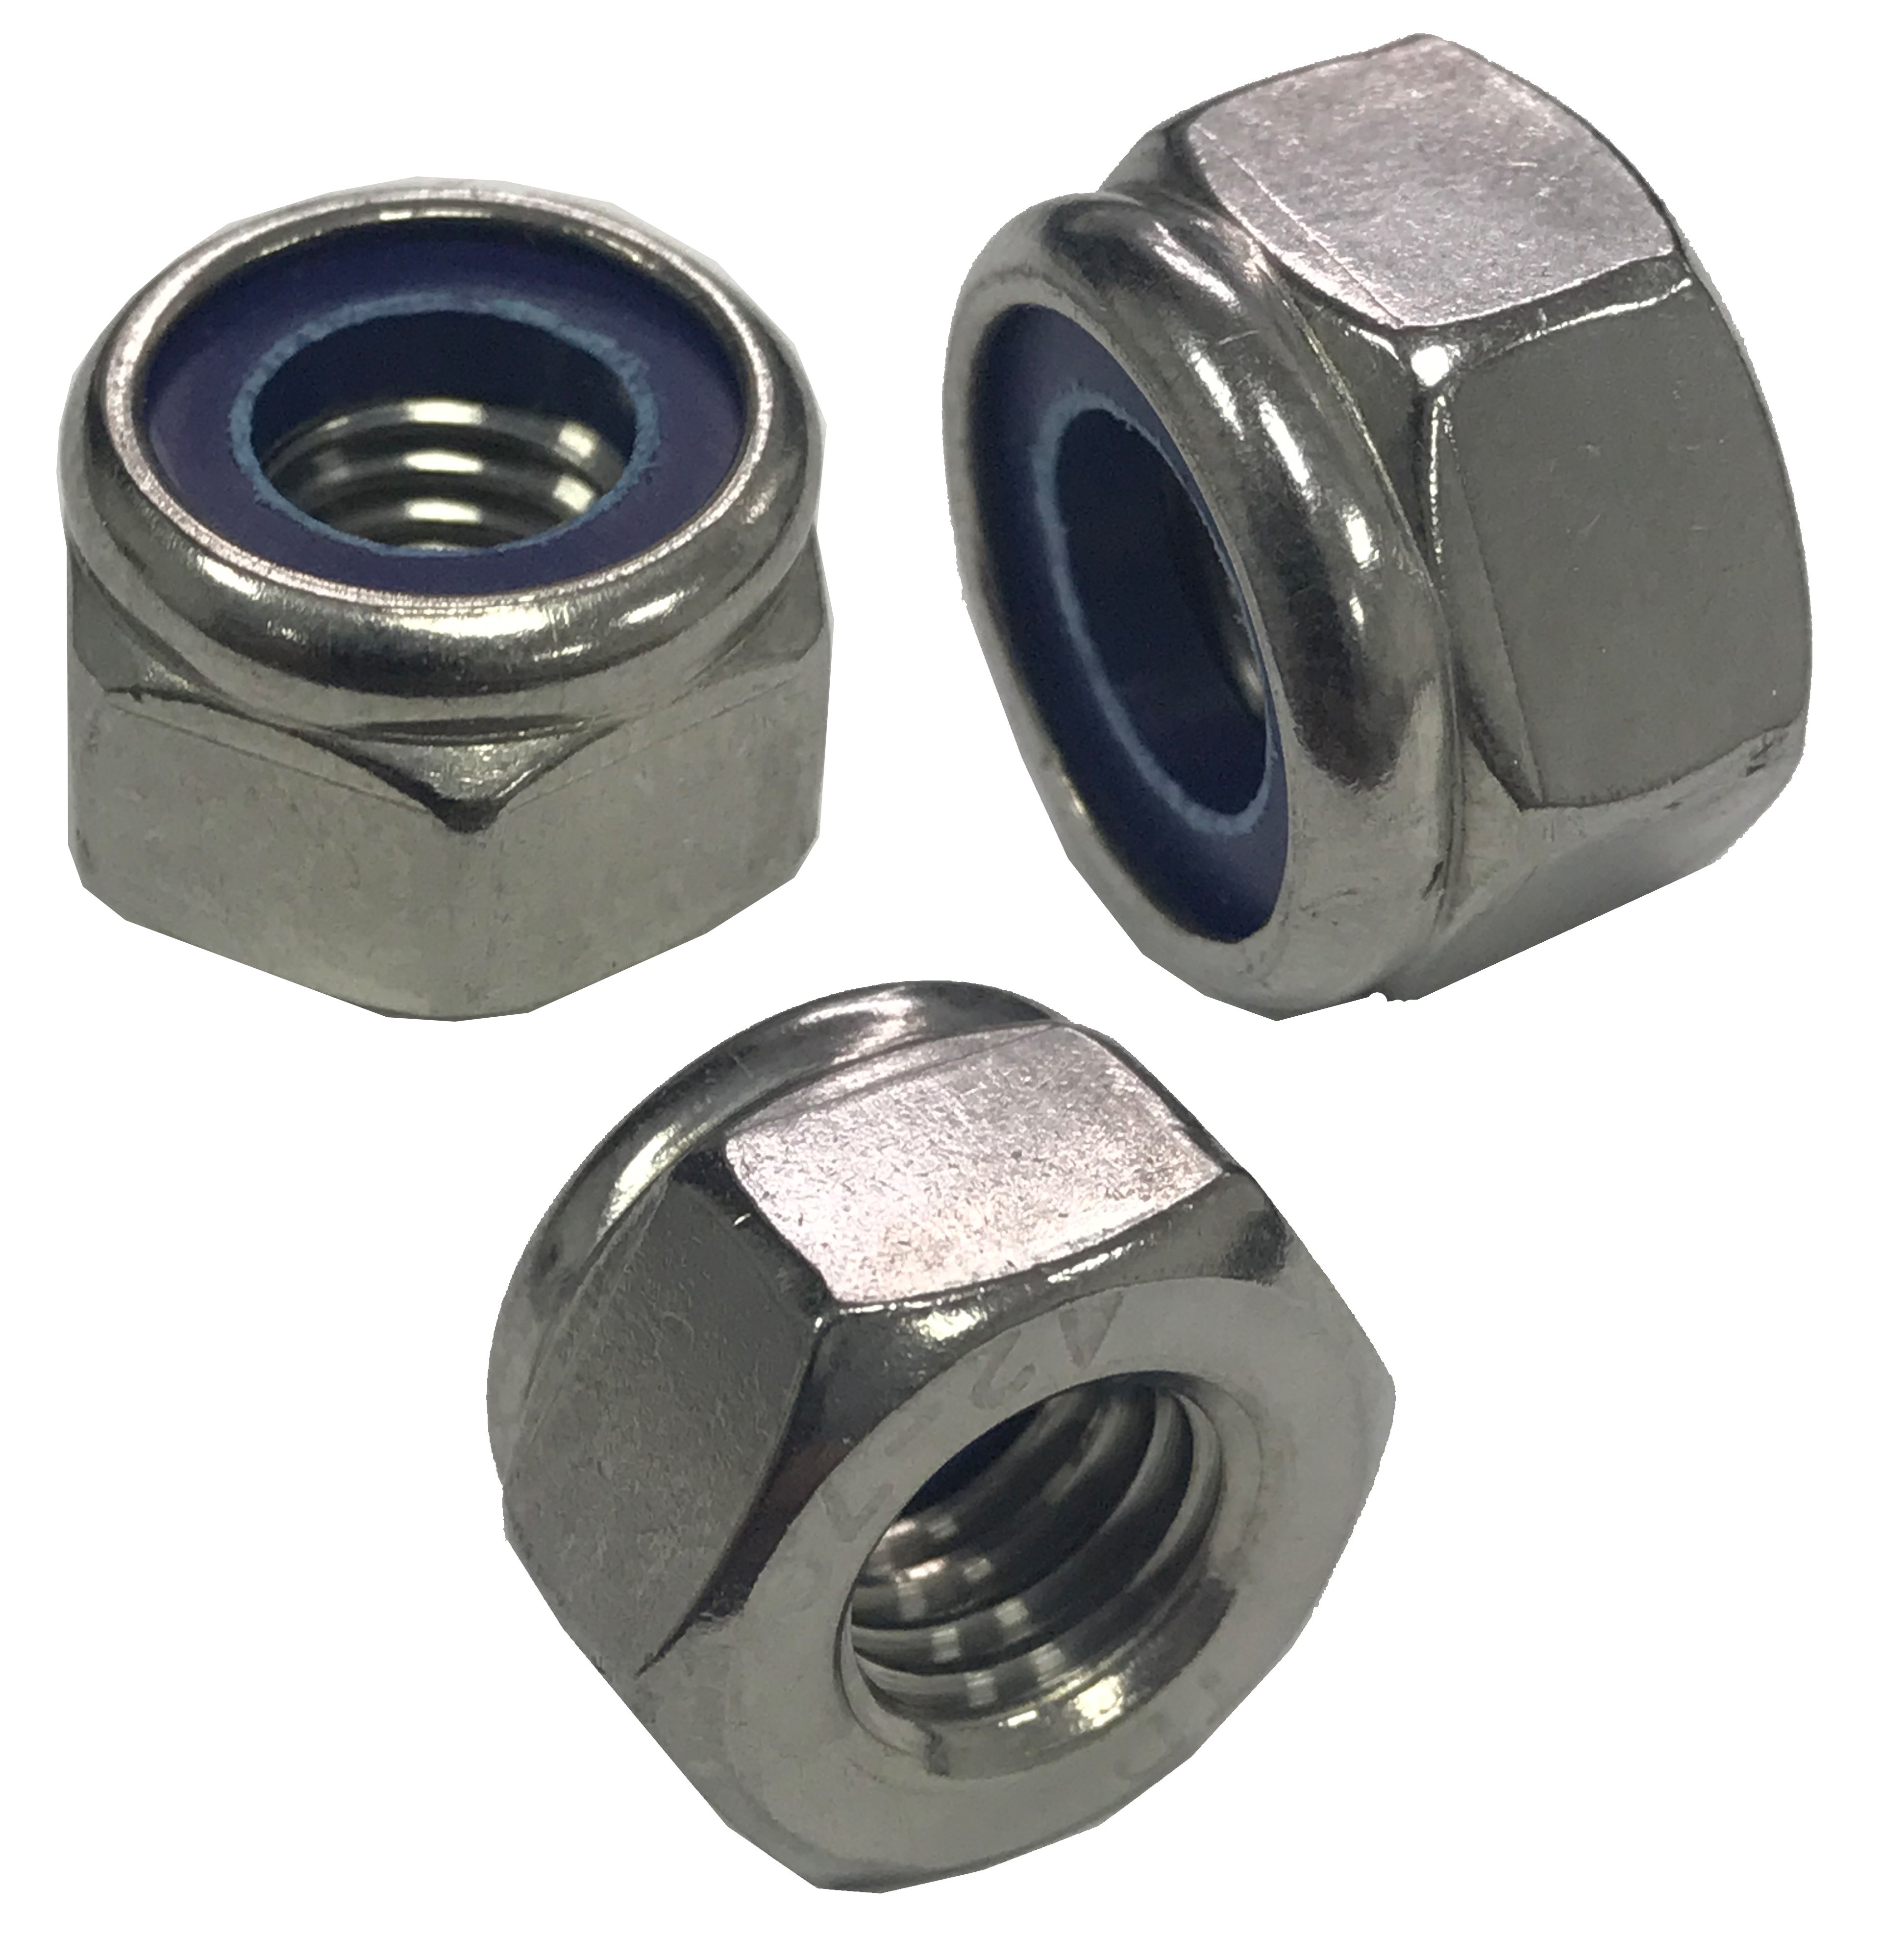 Stop Nut Zinc 5mm nuts  M5 nuts M5-0.8 Coarse Thread Nylon Insert Lock 150 